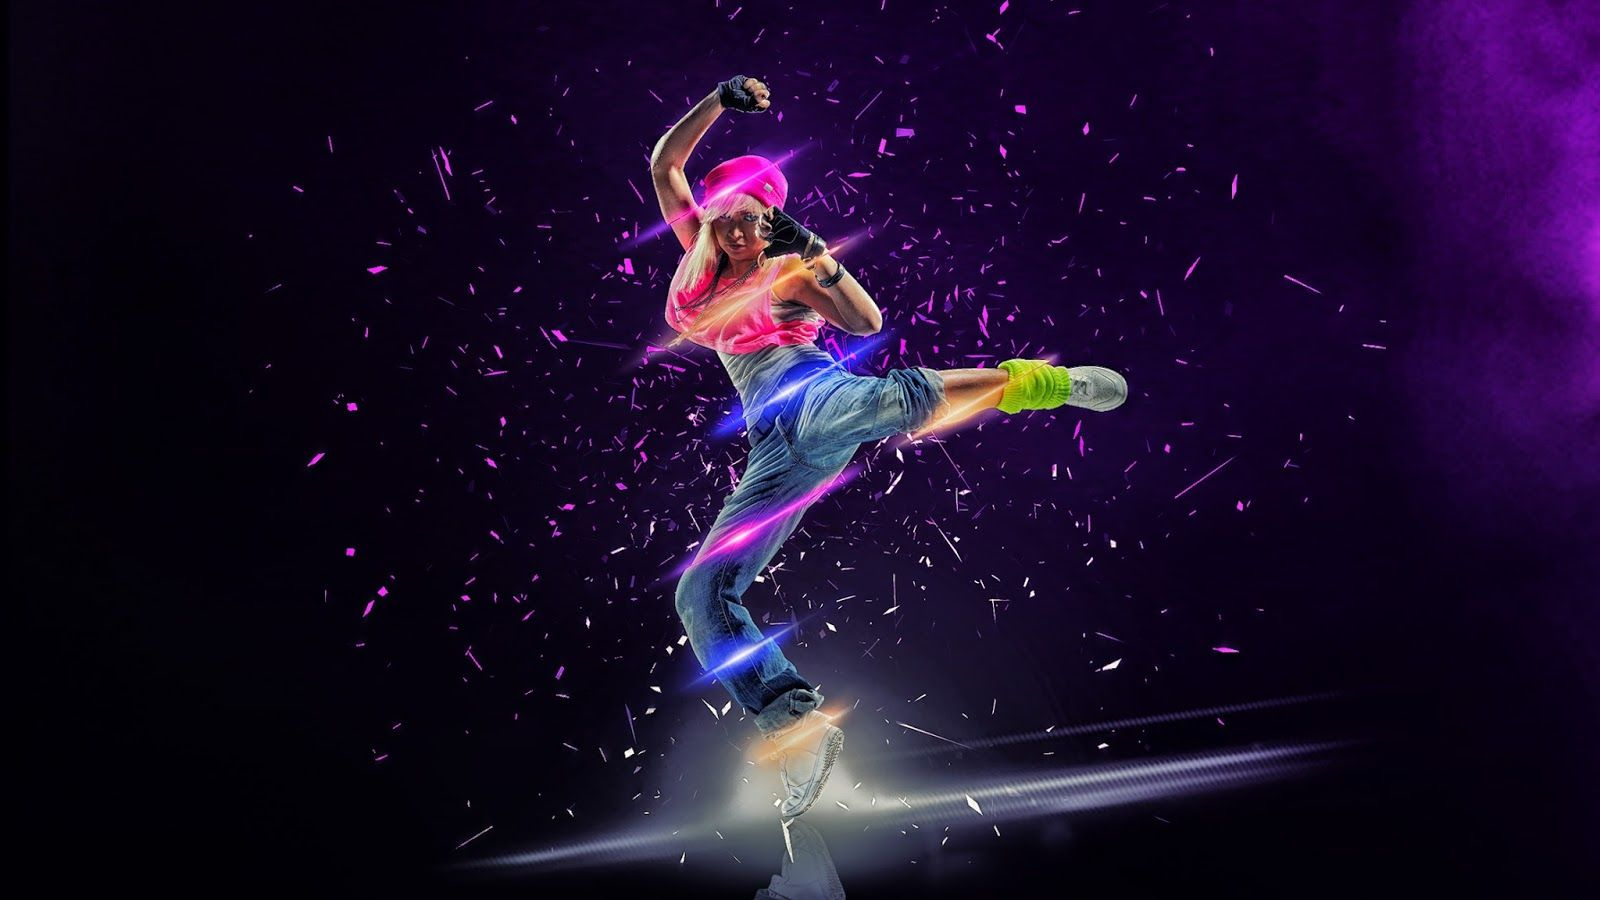 Free download Dance Dancing Girl Wallpaper Top Dance Dancing Girl [1600x964] for your Desktop, Mobile & Tablet. Explore Dance Background. Dance Dance Revolution Wallpaper, Dance Wallpaper, Dance Floor Wallpaper